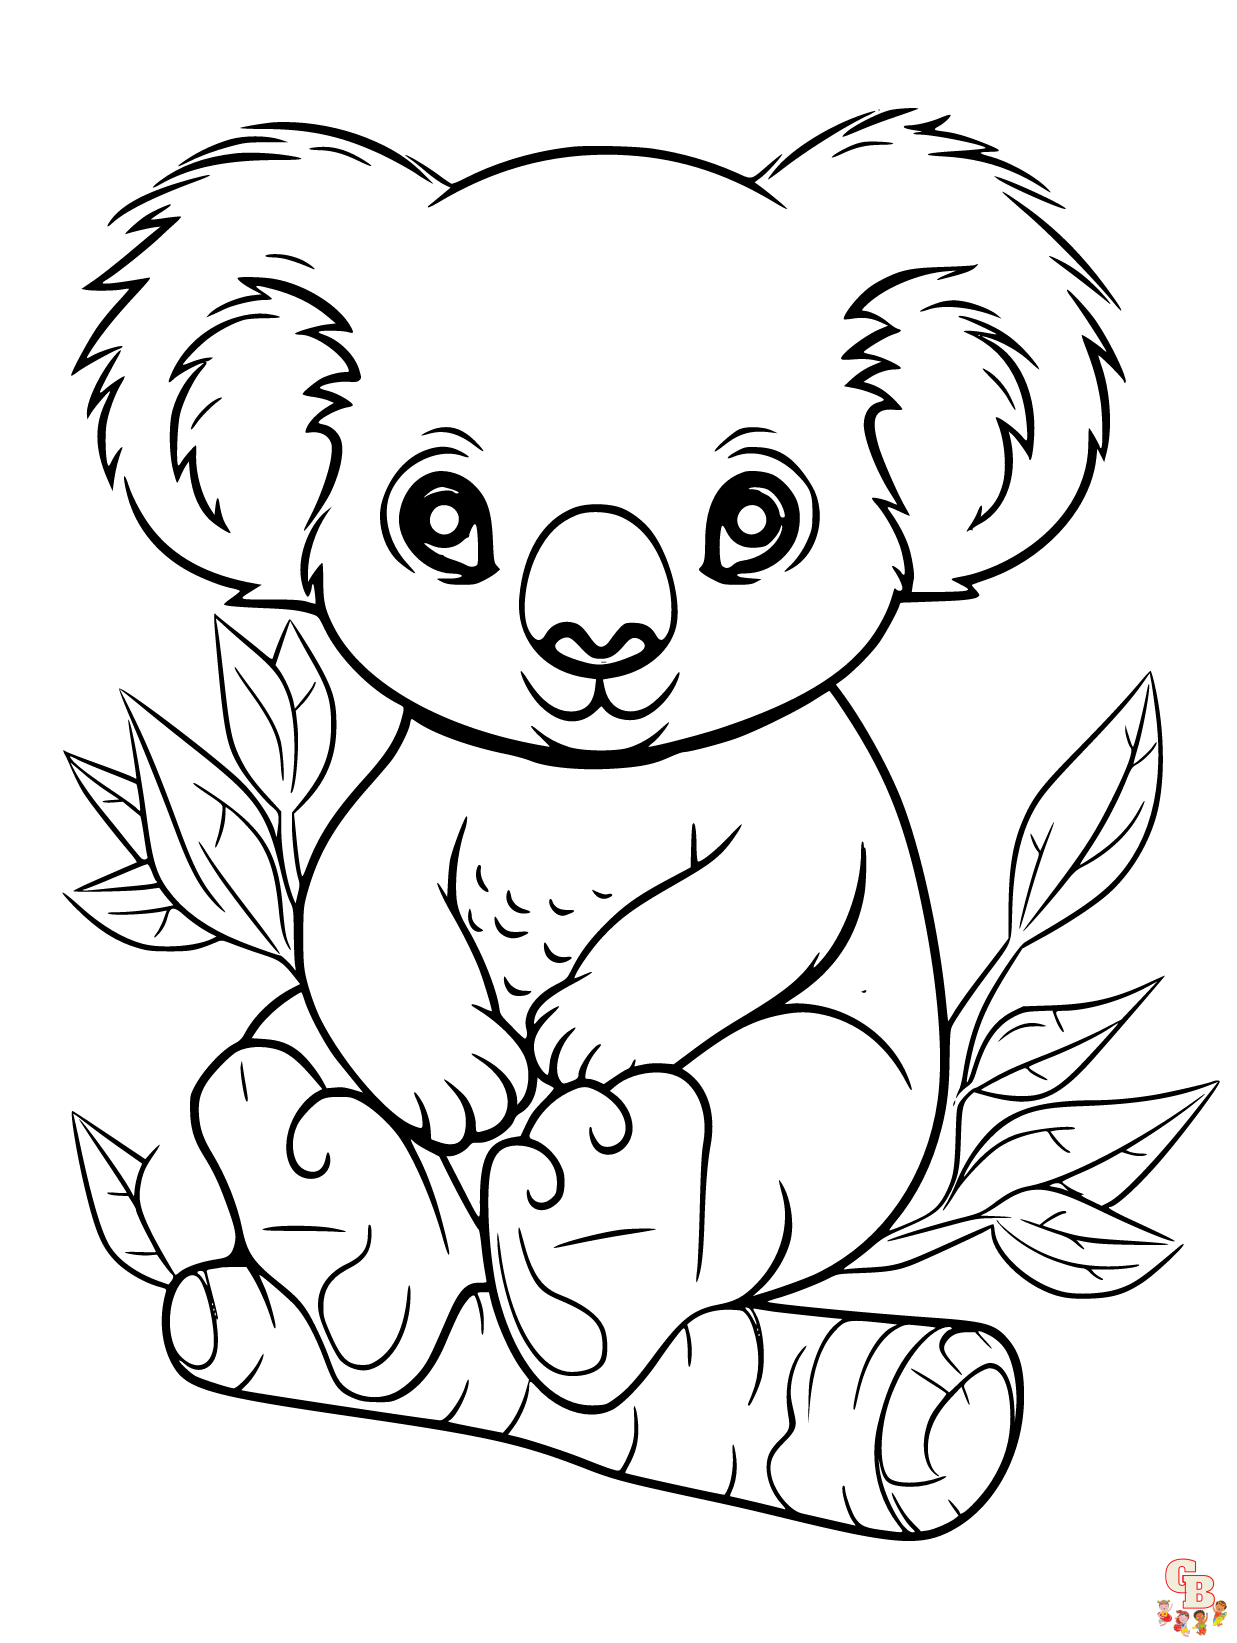 Disegni da colorare Koala stampabili gratuiti - GBcoloring